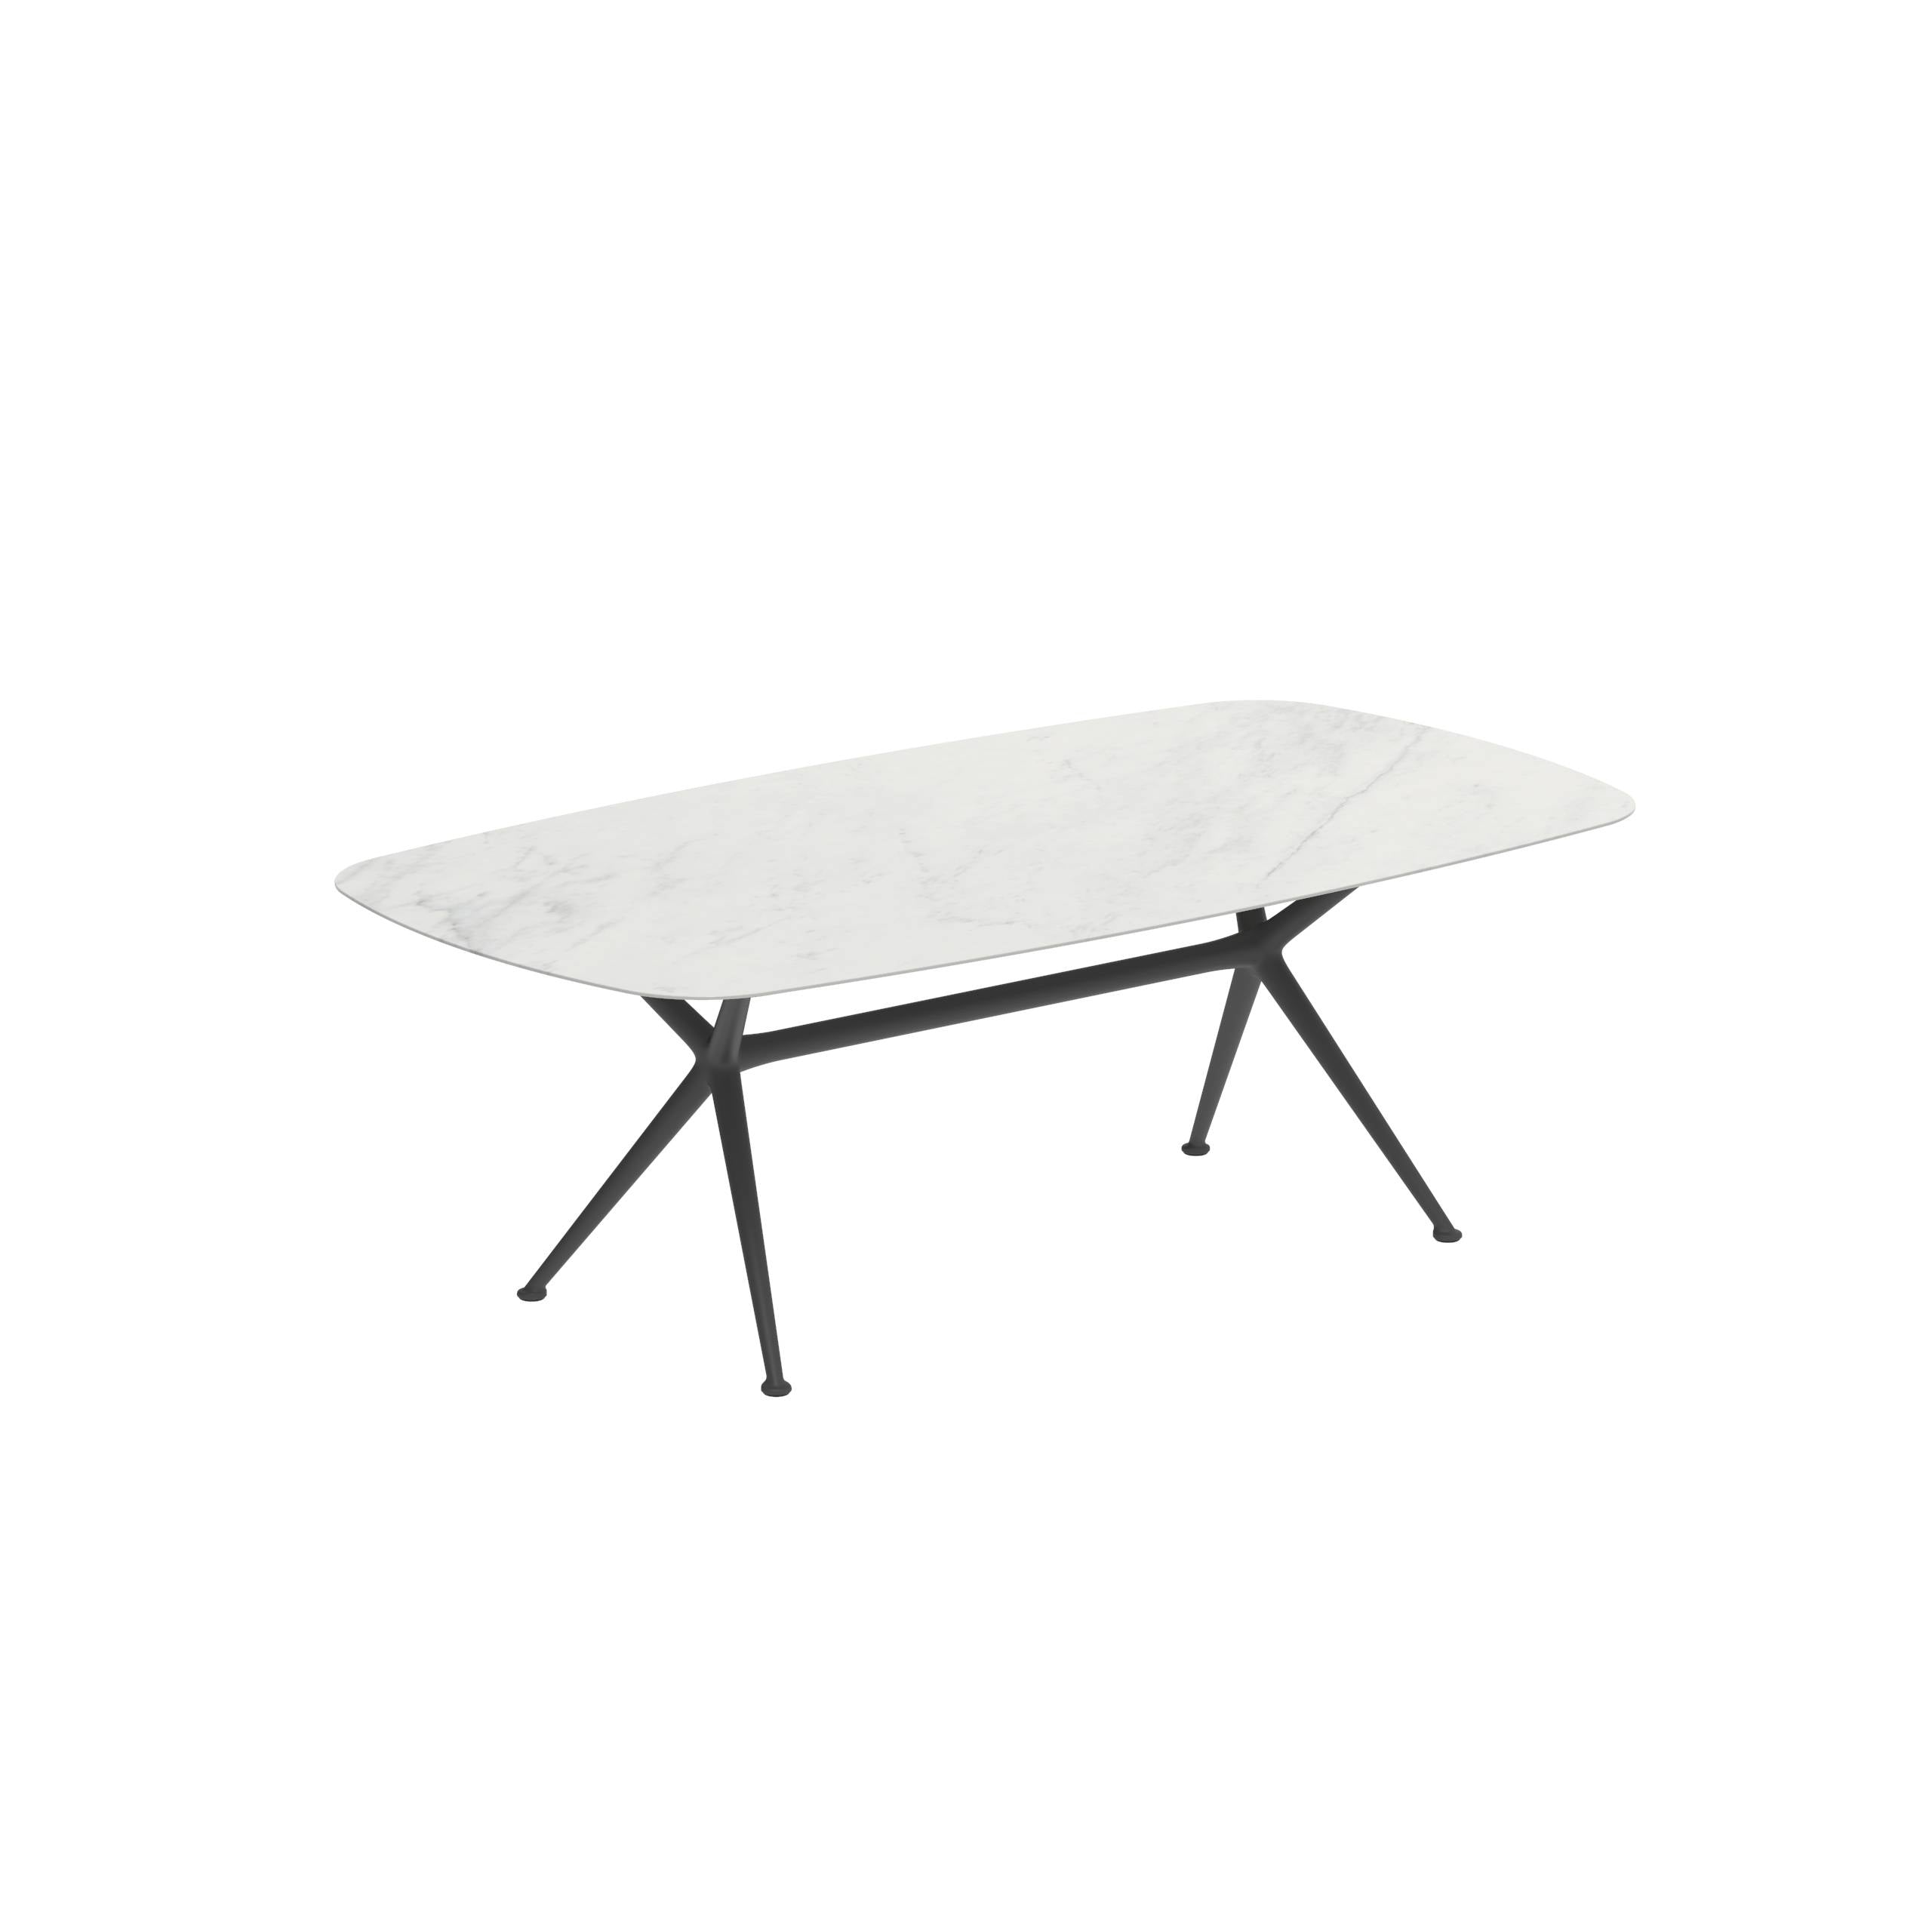 Exes Table 220x120cm Alu Legs Anthracite - Table Top Ceramic Bianco Statuario